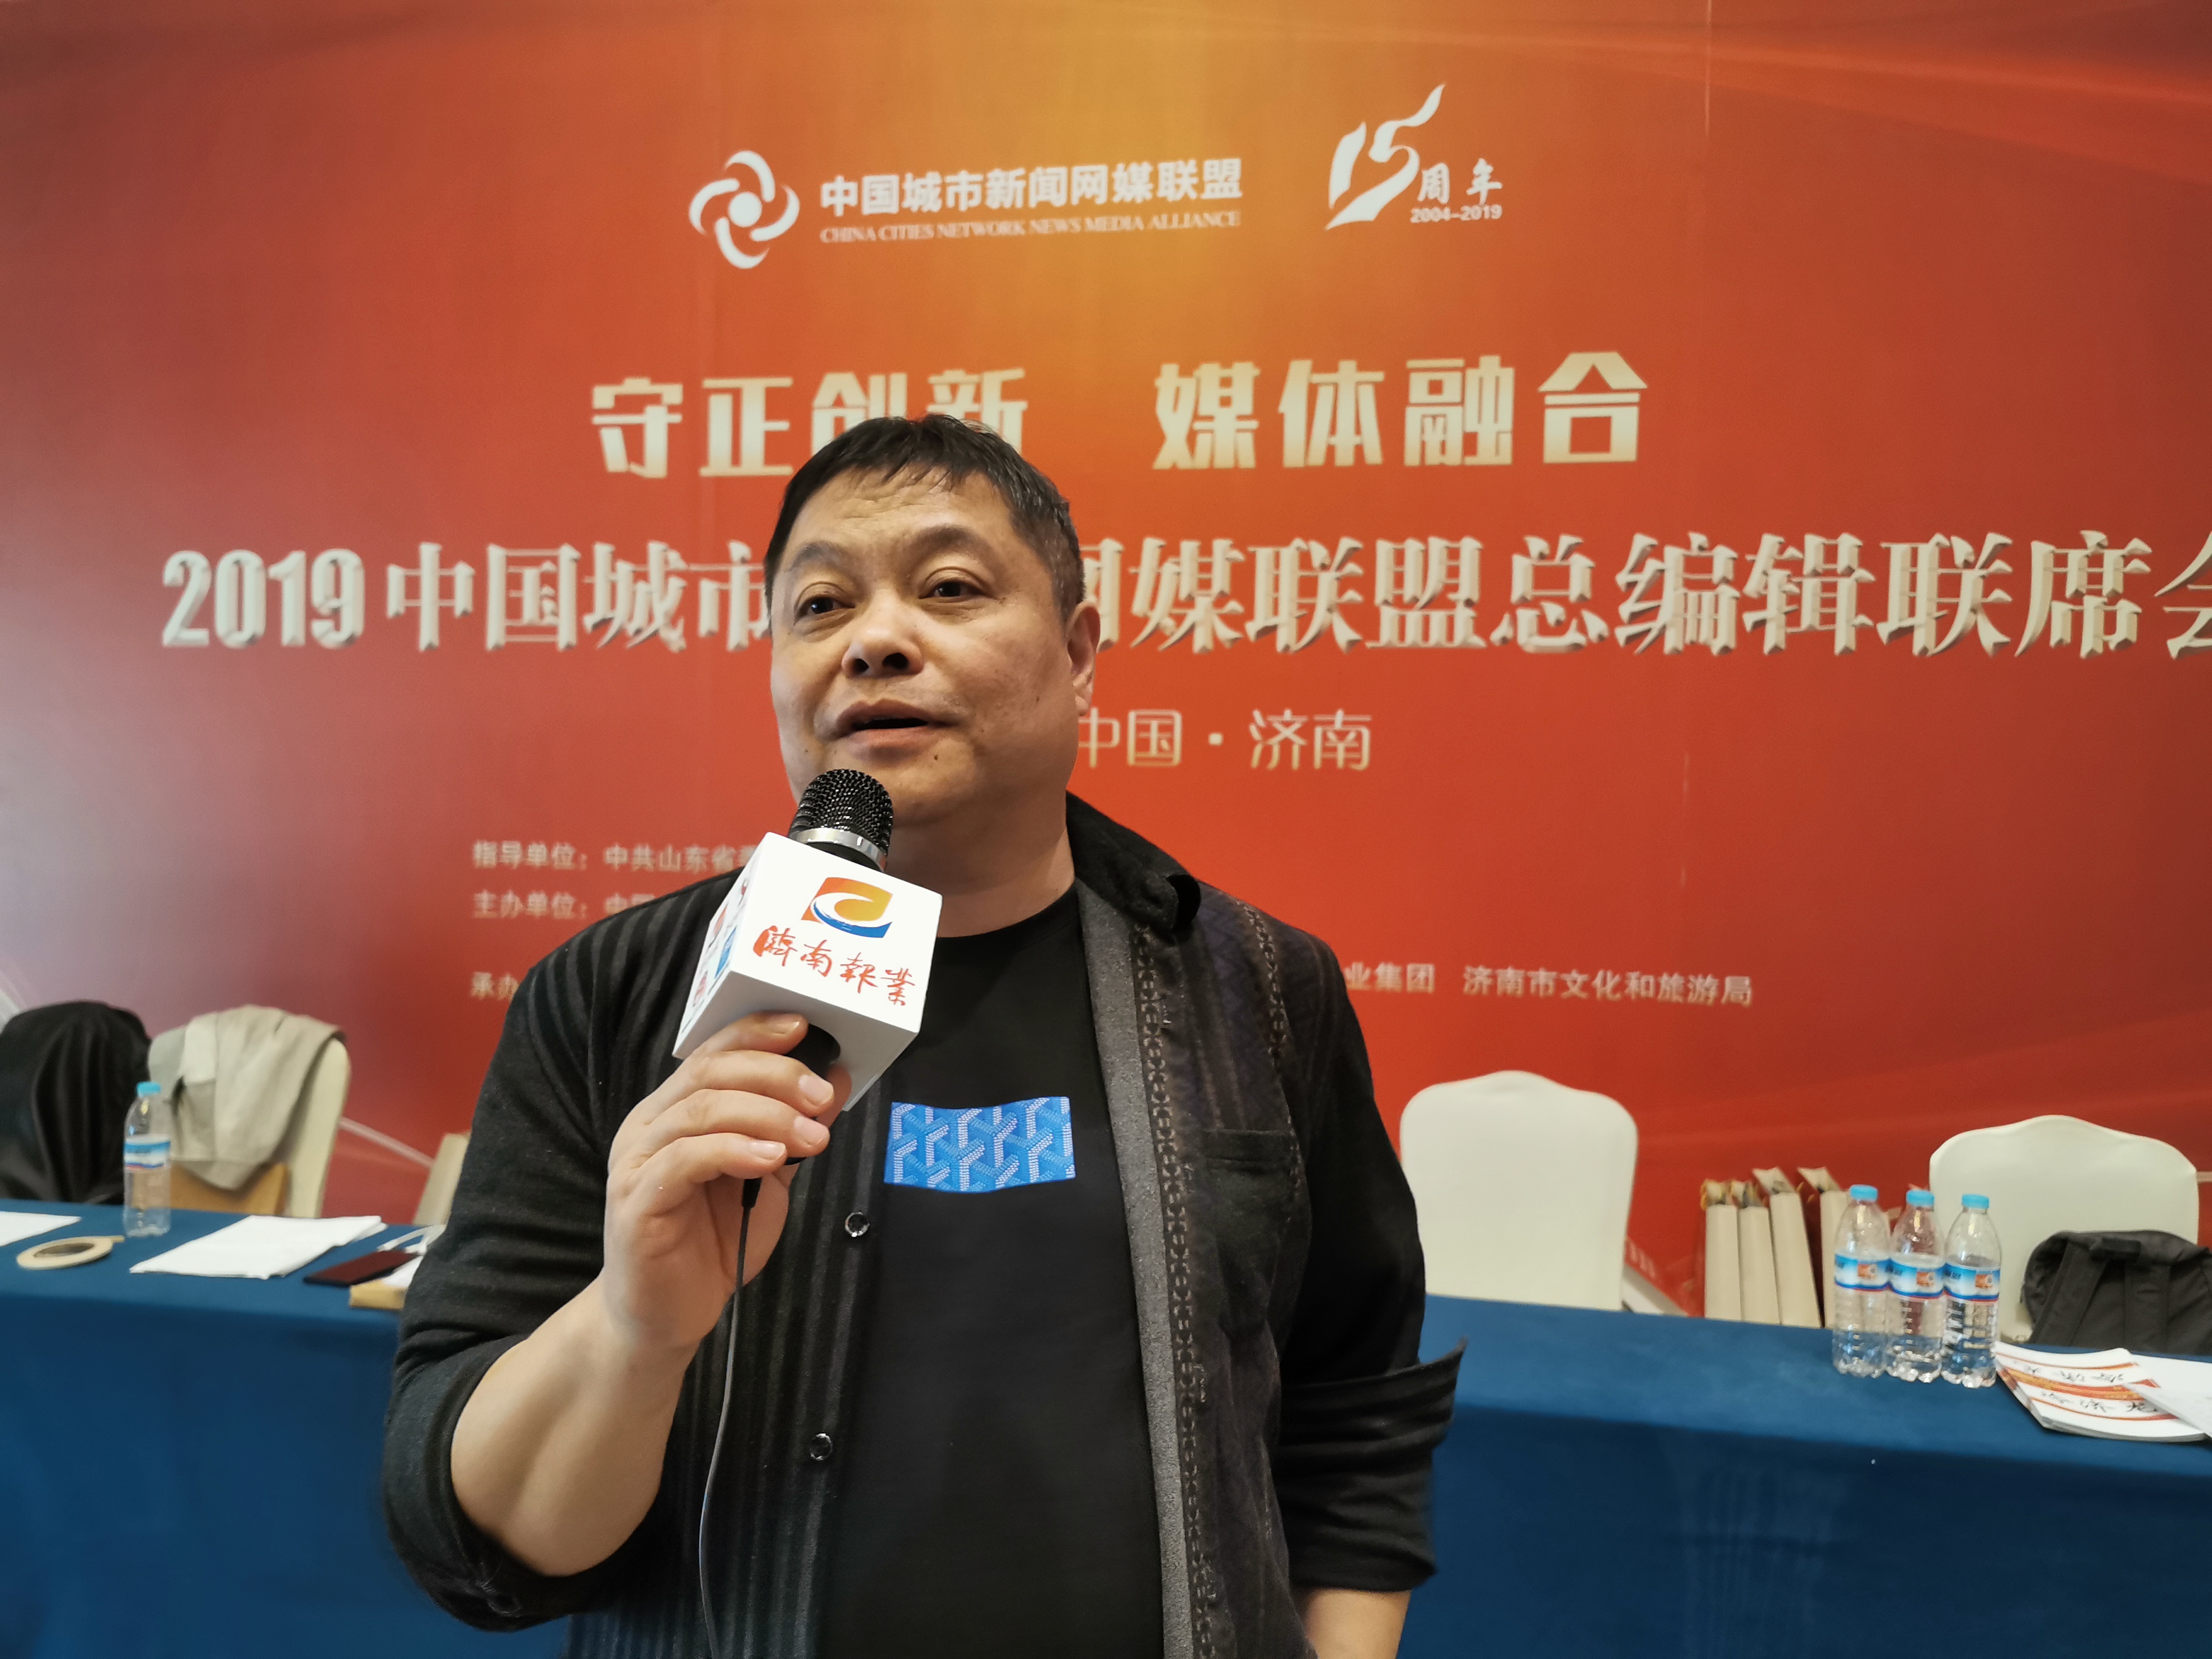 桂林生活网董事长费志刚接受采访